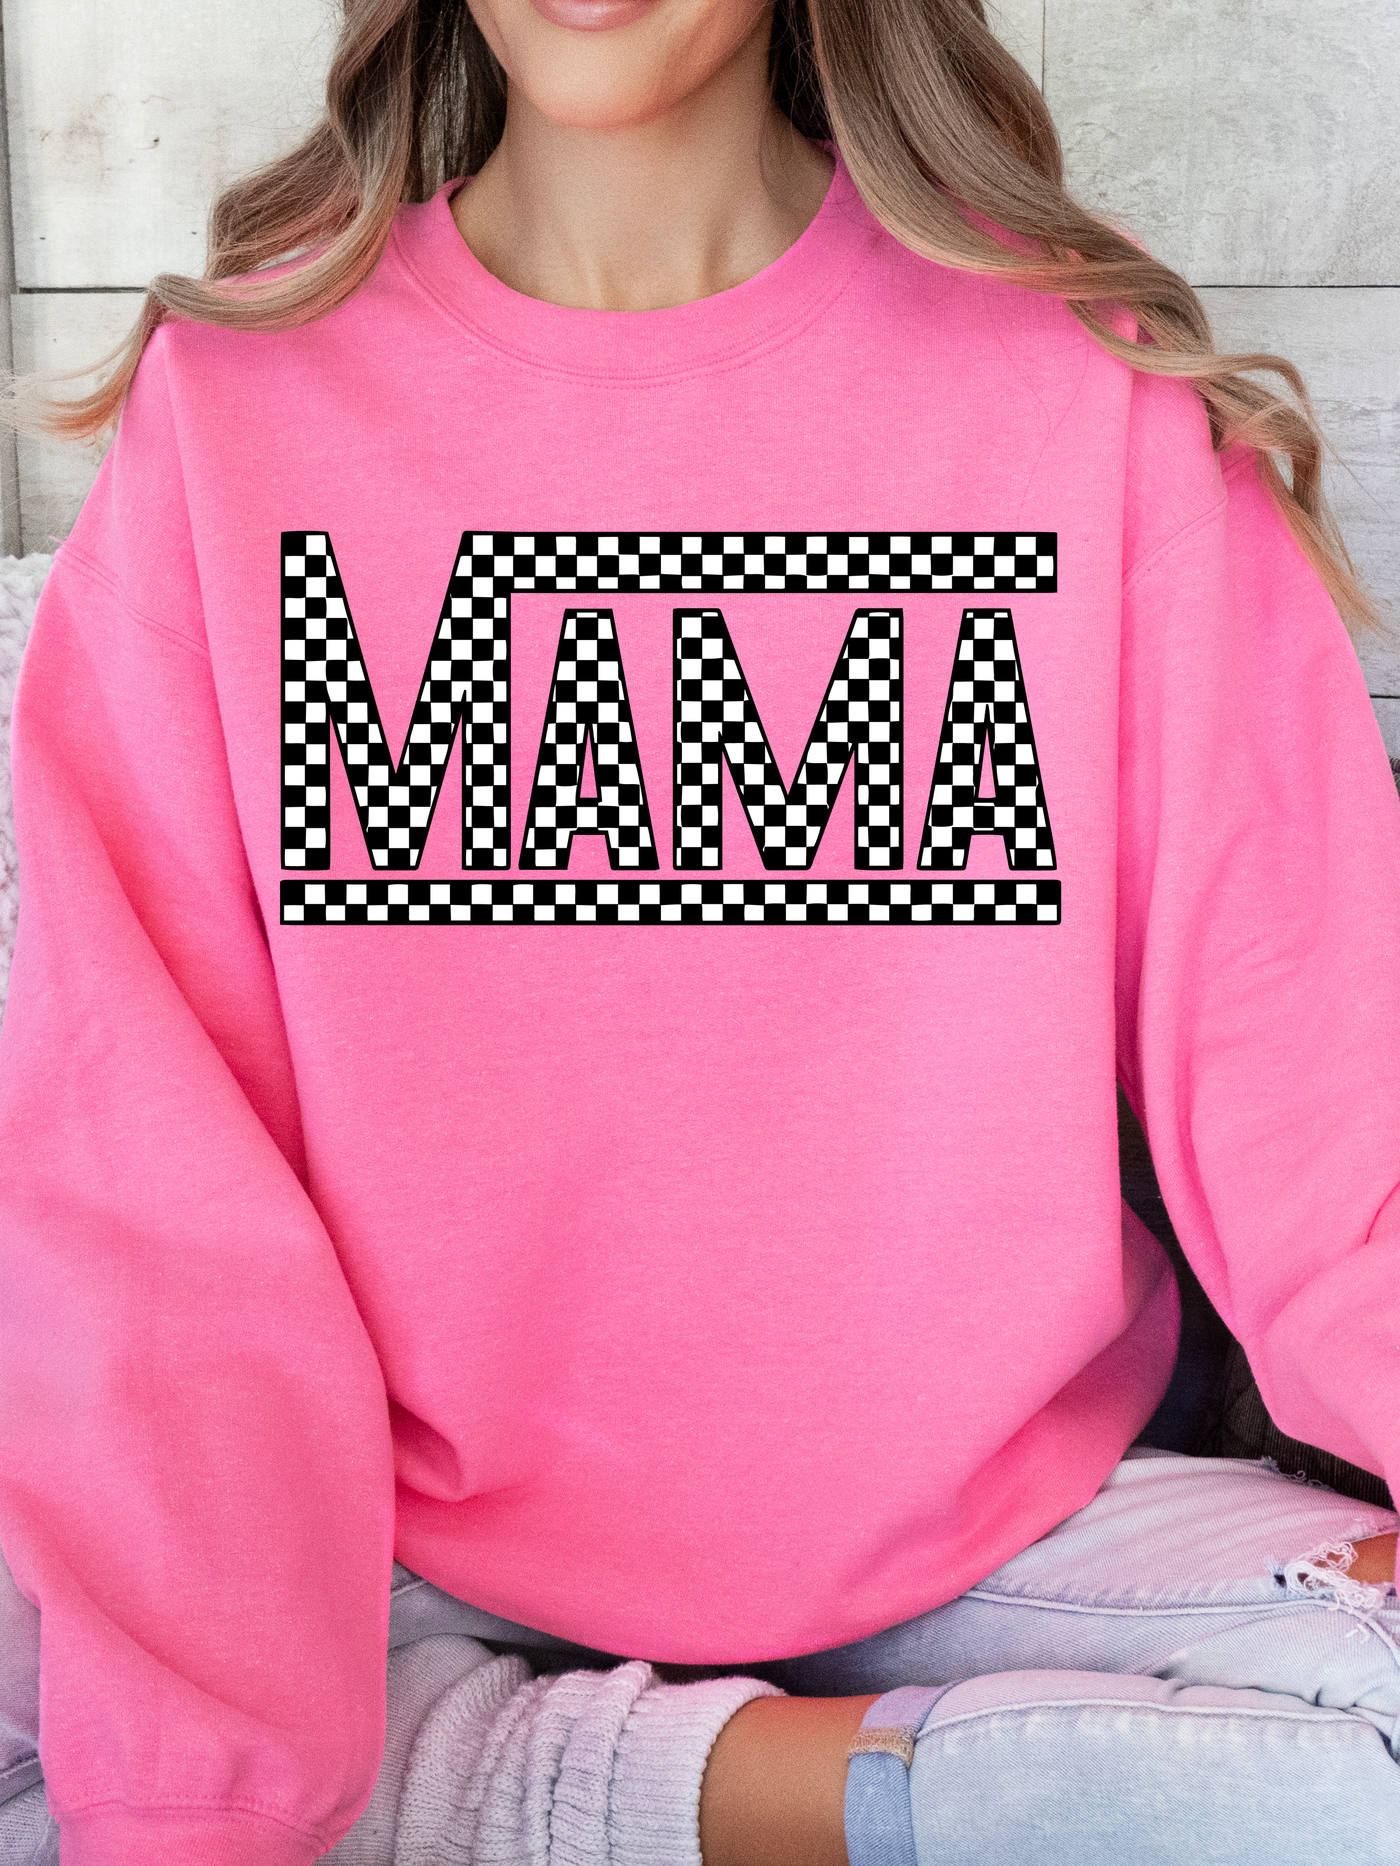 Hot Pink Mama Checkered Tee/Sweatshirt